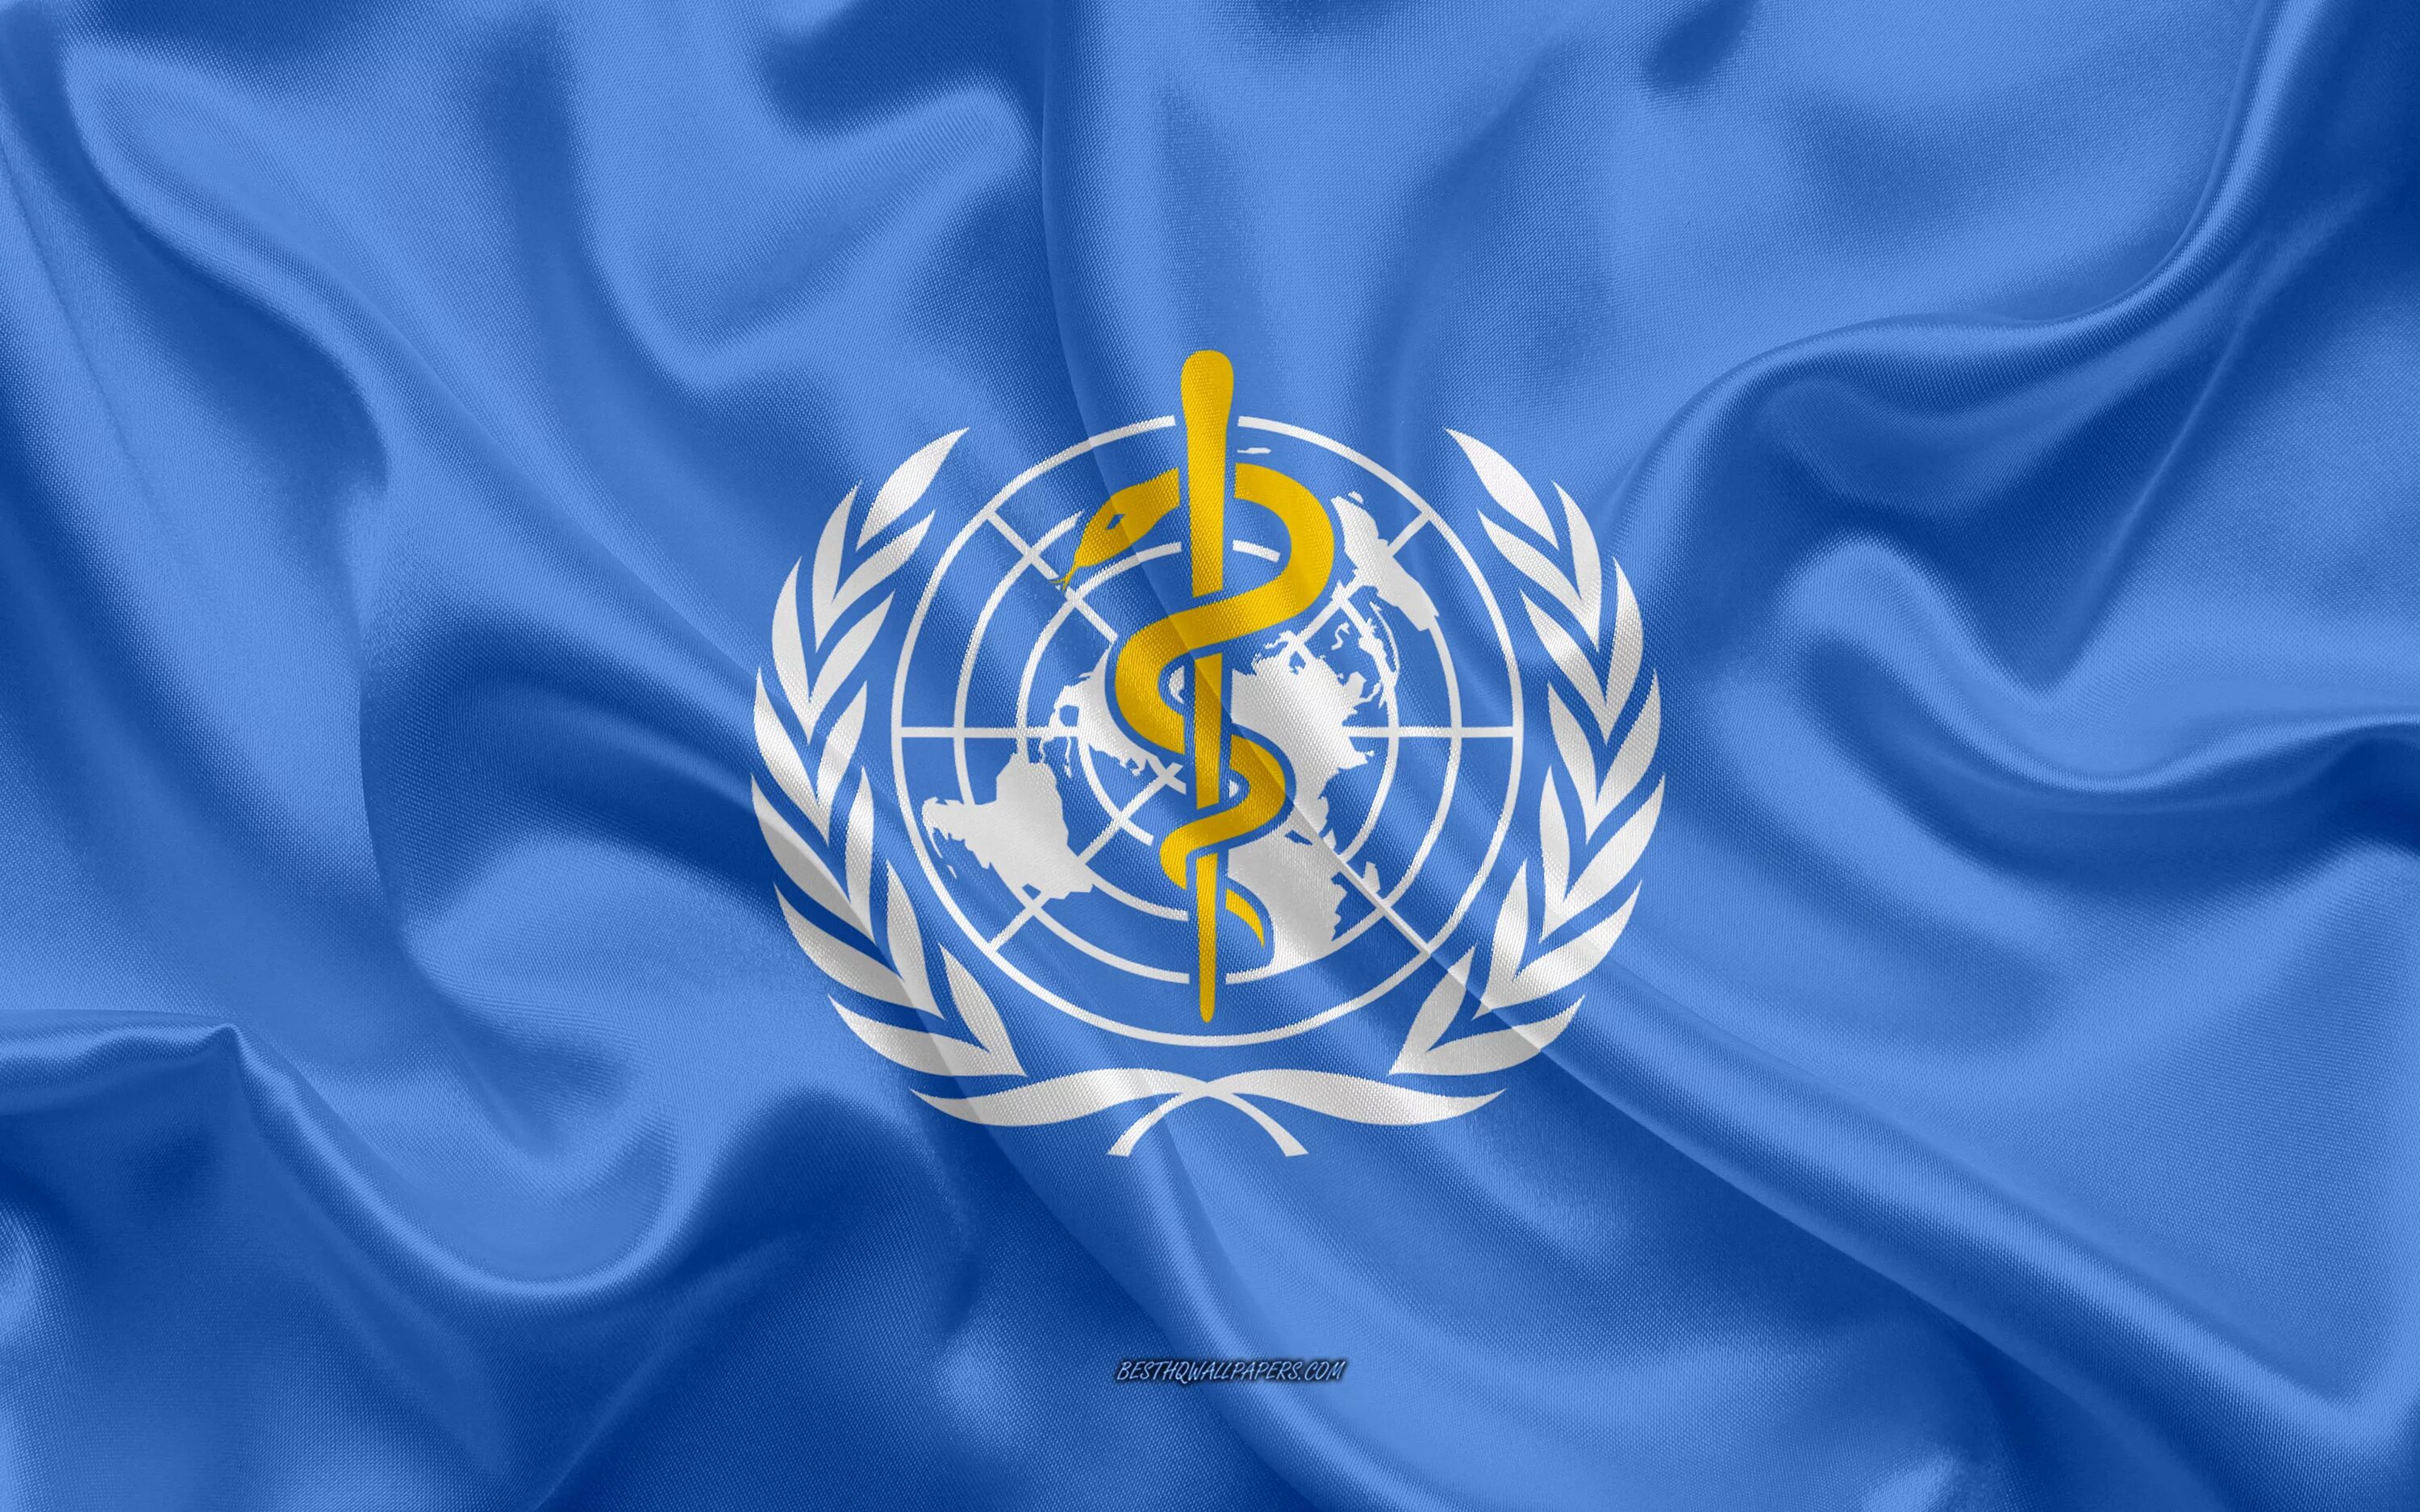 Мировая организация оон. Флаг всемирной организации здравоохранения. 3 Всемирная организация здравоохранения (воз). Воз ООН. Воз - Всемирная организация ООН.